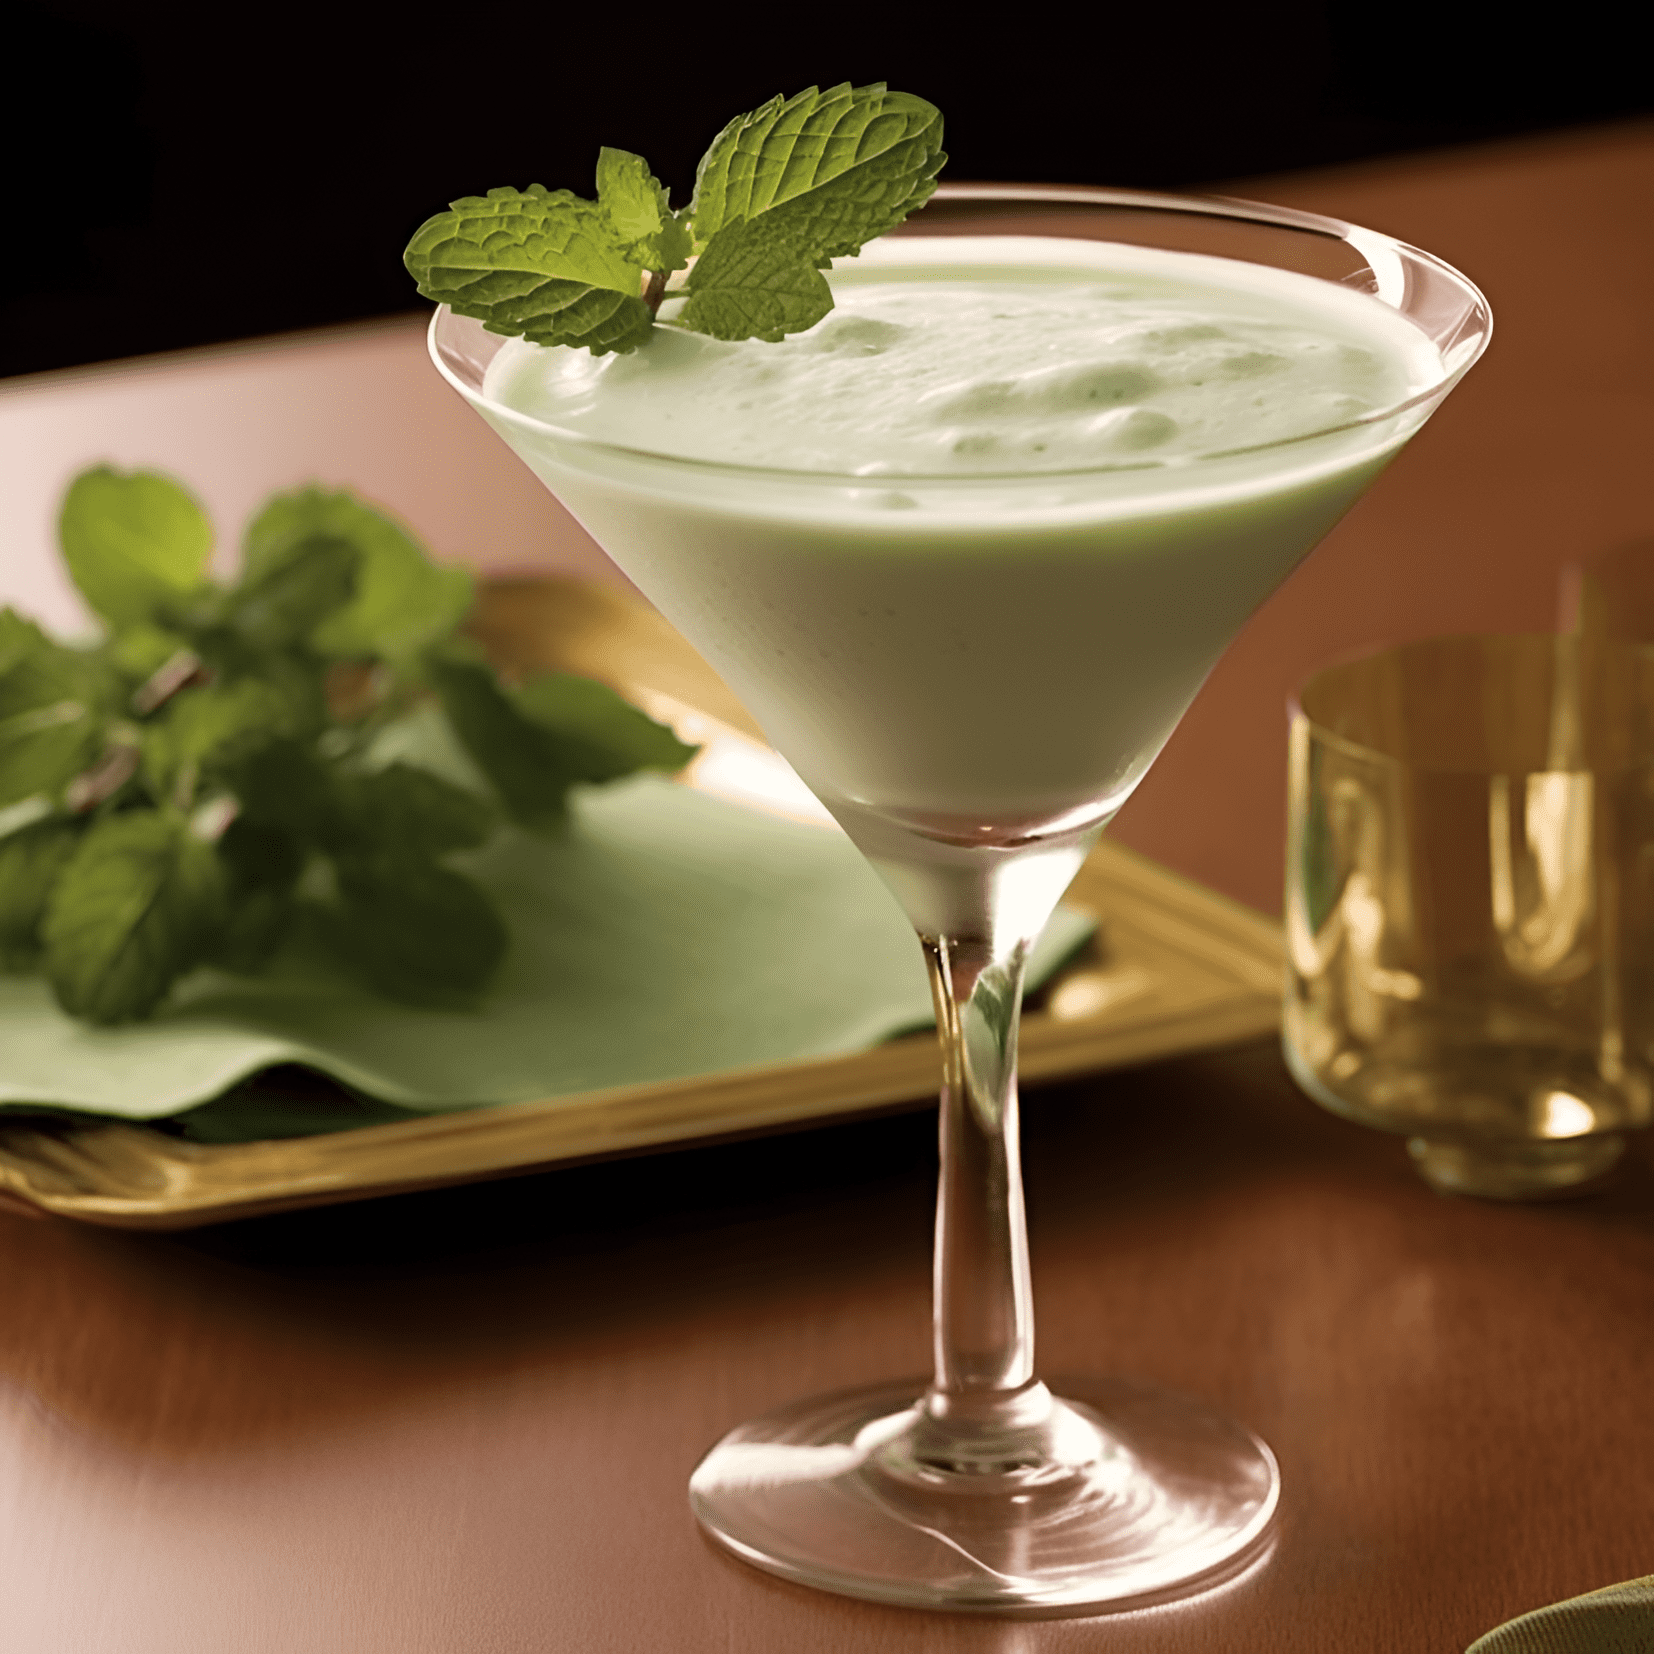 El cóctel Shamrock es una deliciosa mezcla de sabores dulces, agrios y cremosos. La combinación de whiskey irlandés, crema de menta verde y crema fresca crea un sabor suave y rico con un toque de frescura a menta.